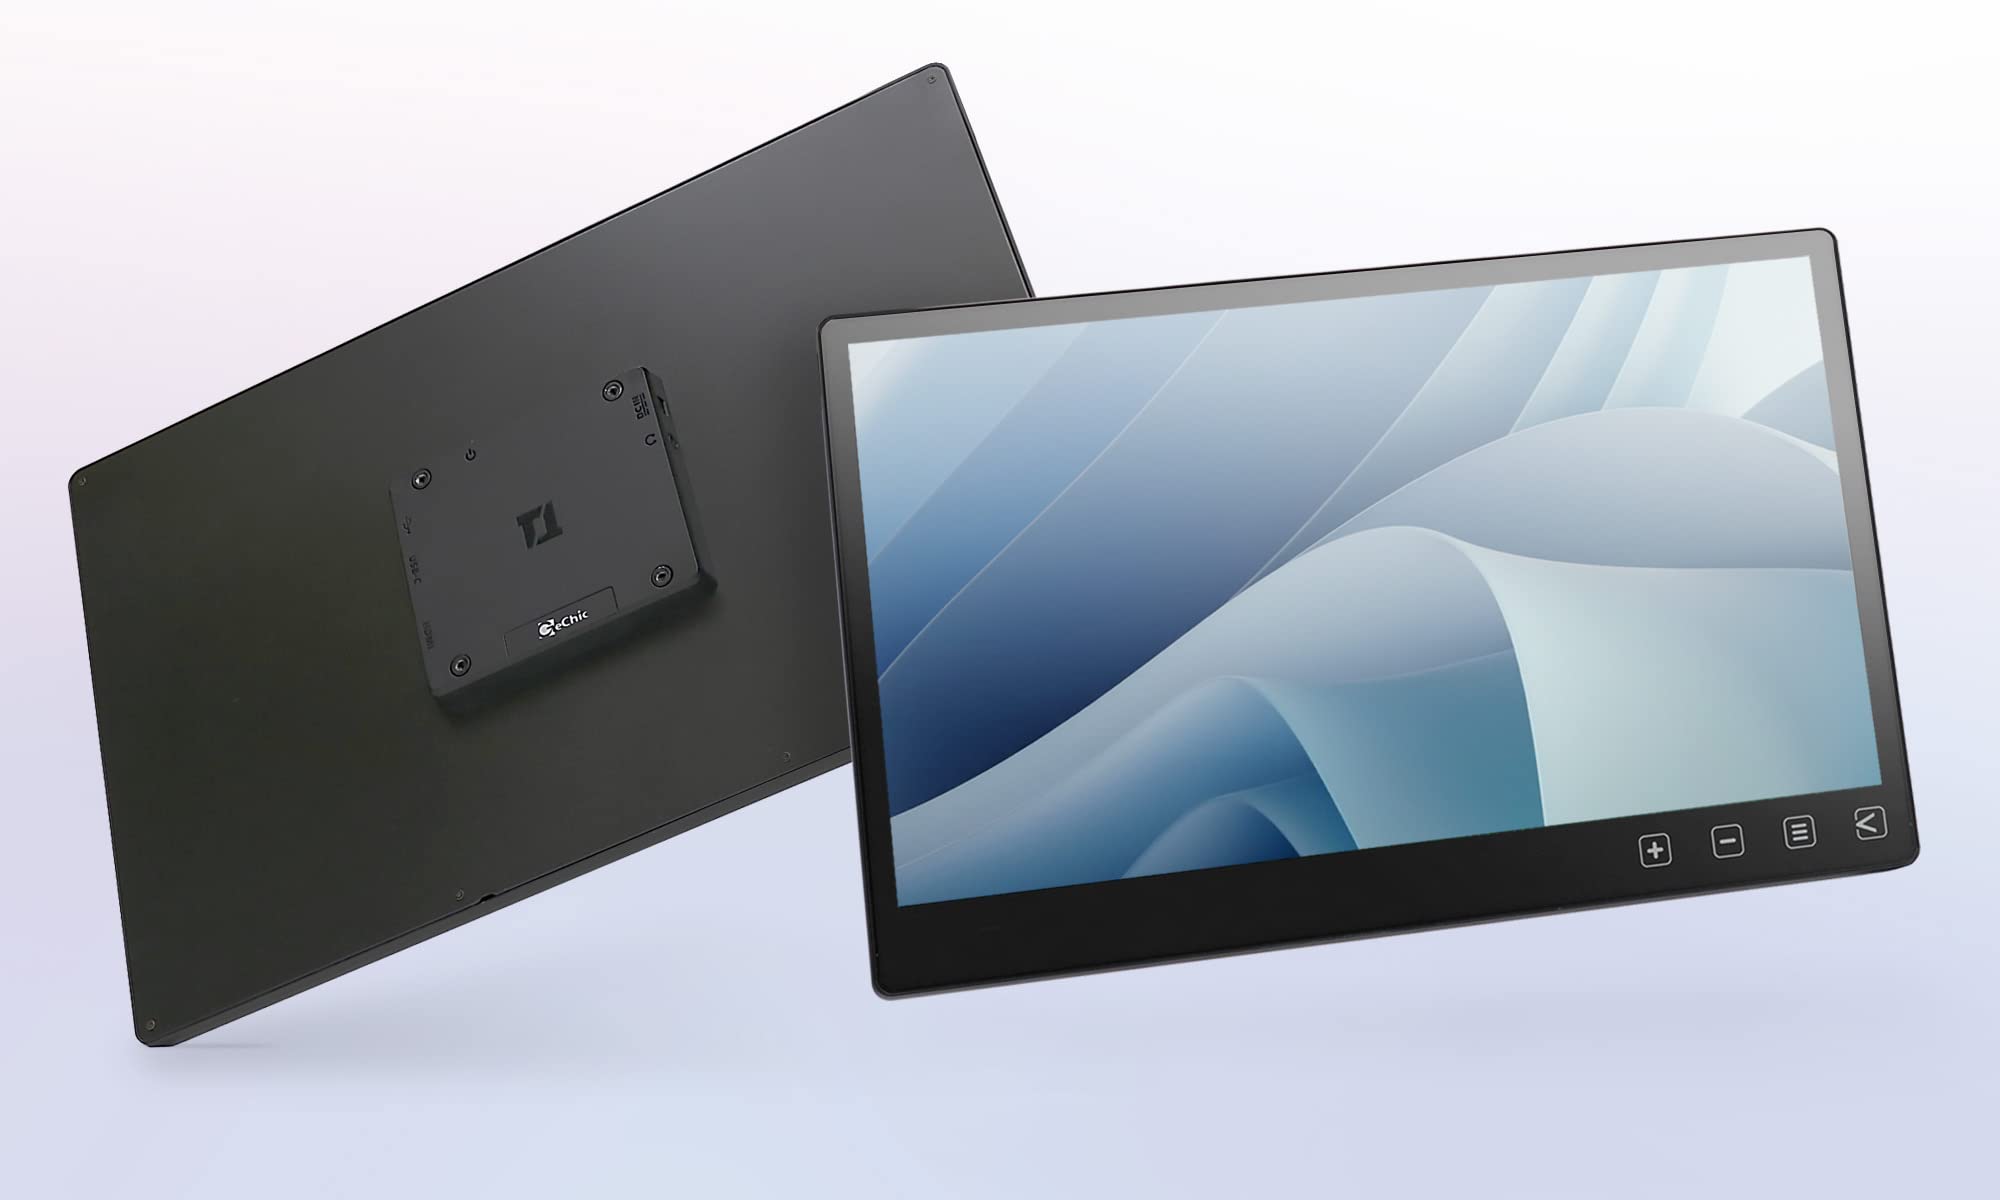 Gechic T151A Touchscreen FHD 39,6 cm (15,6 Zoll), HDMI-Eingänge, USB Type-C, Multi-Touch mit 10 Fingern, 12 V und 5 V, True-Flat Touchscreen-Glas für integriertes Gerät